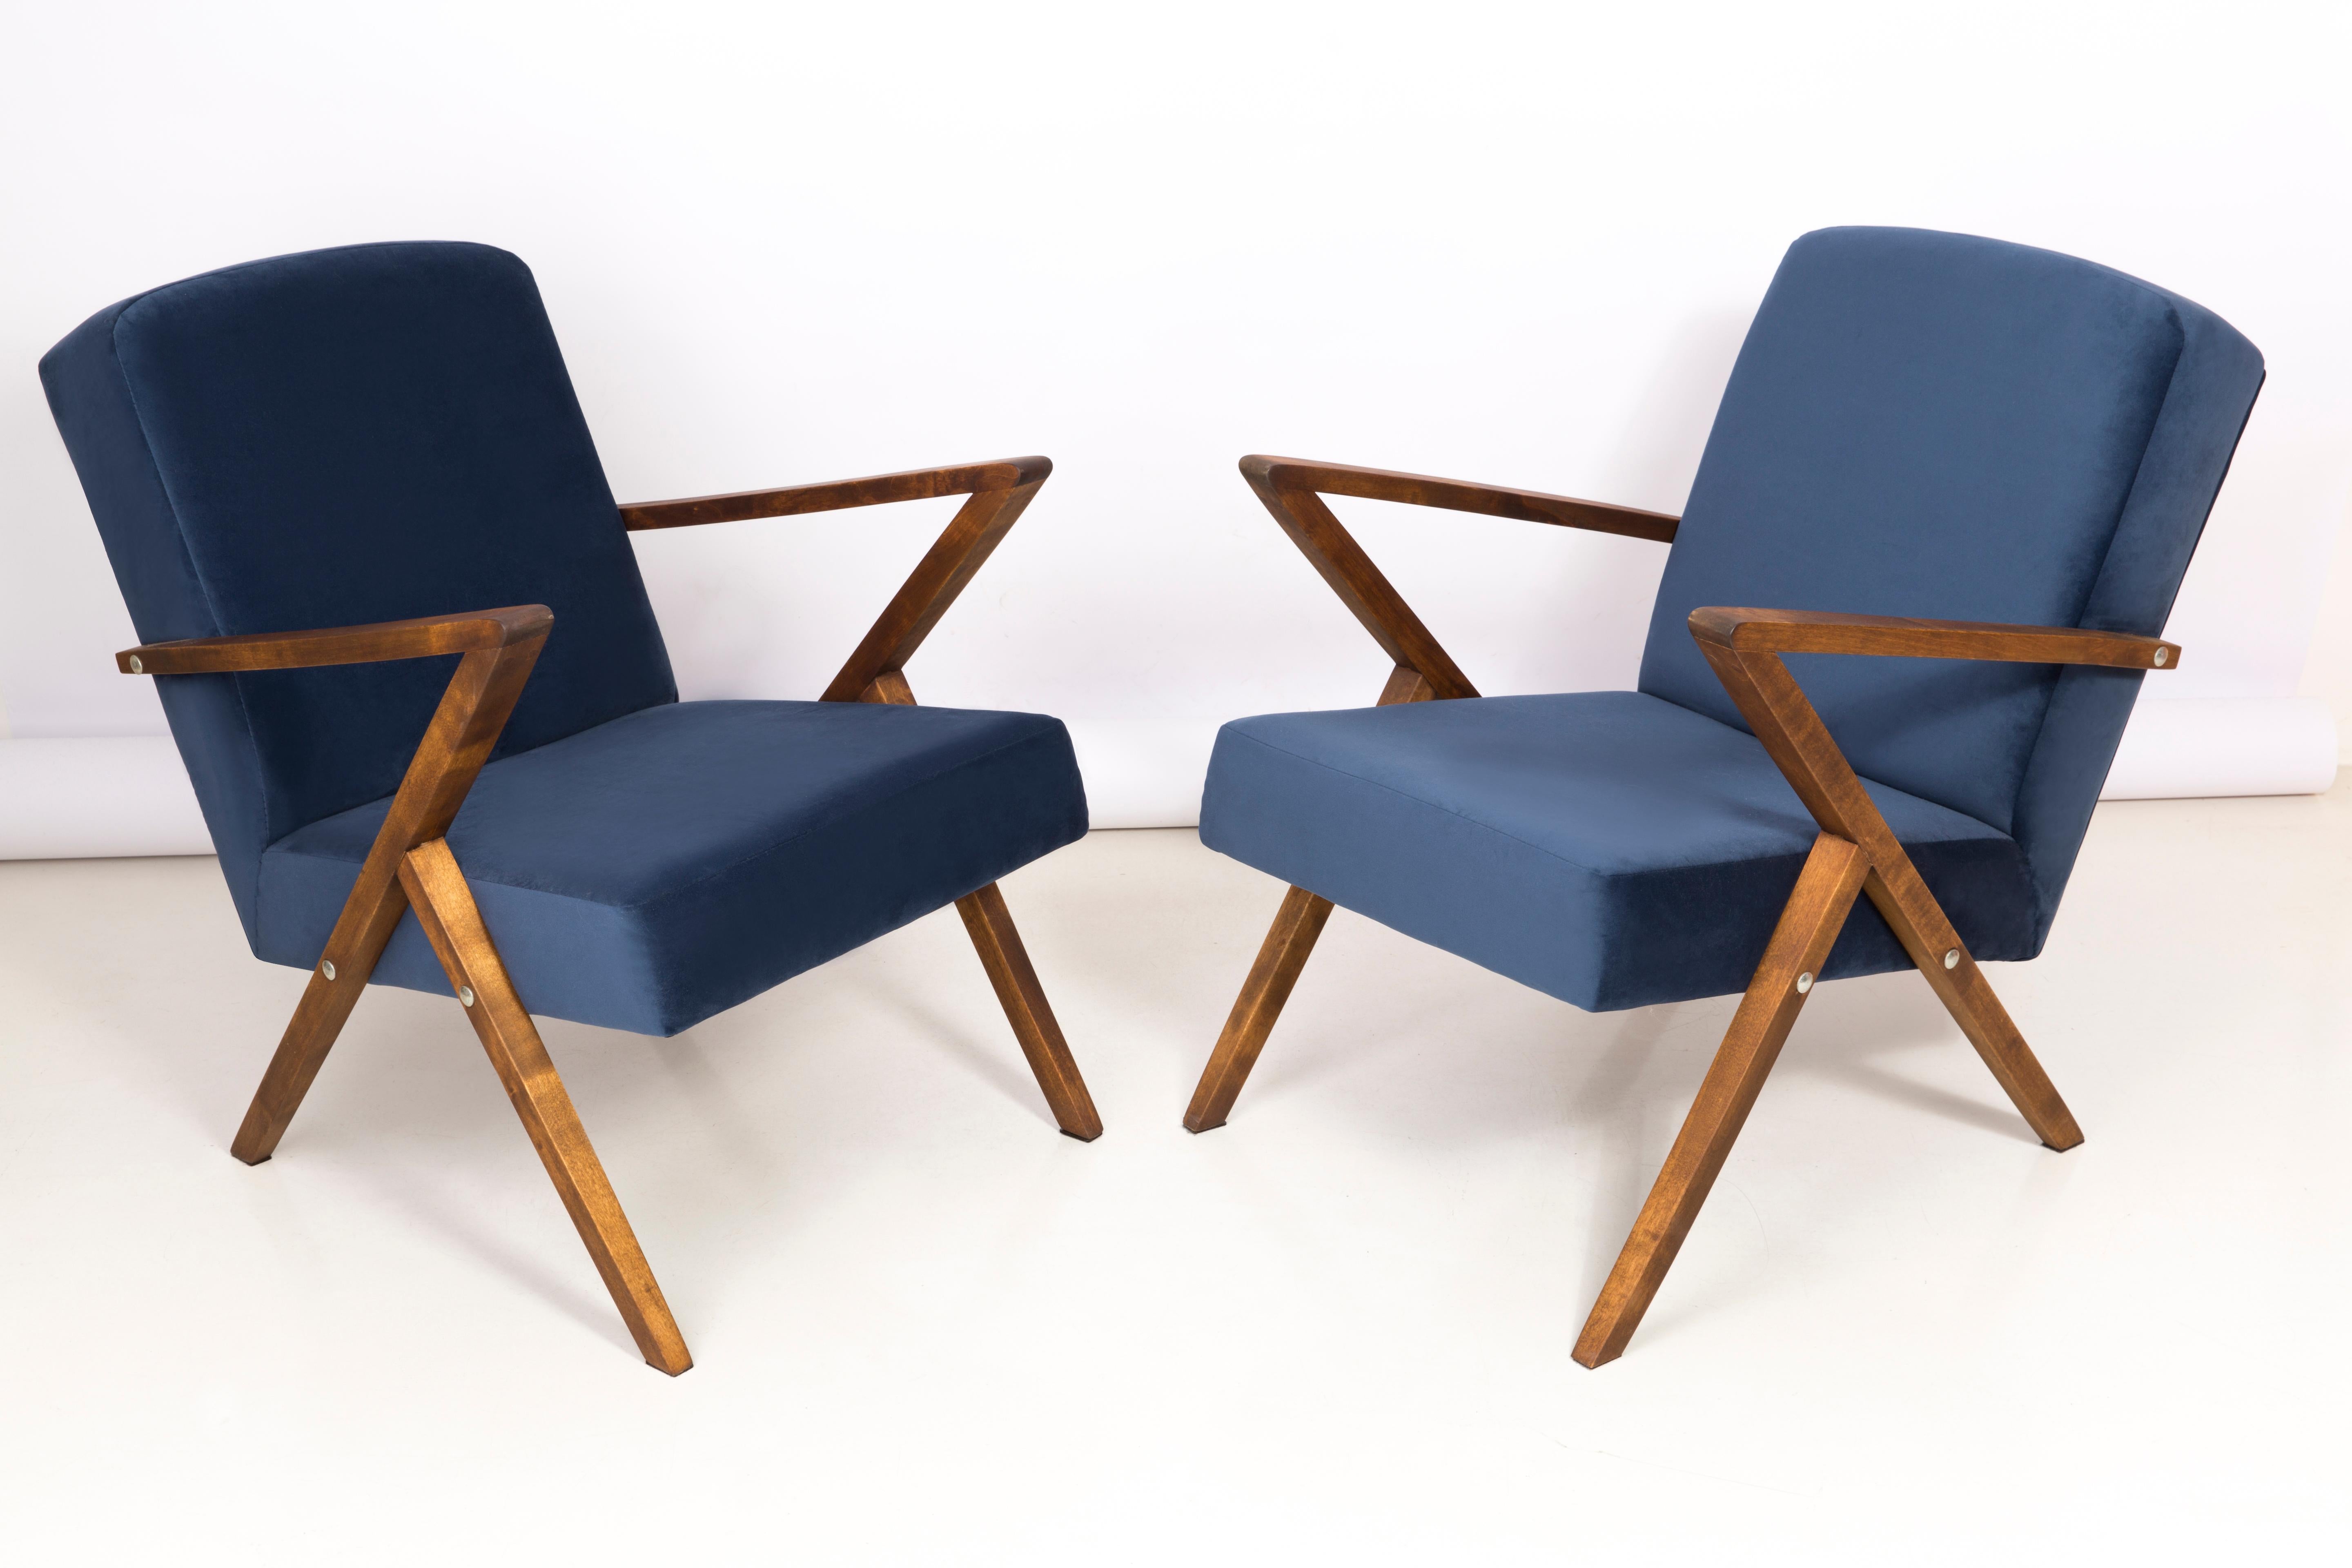 Ein Paar Sessel, die in den 1970er Jahren in der Genossenschaft für die Erneuerung von Bydgoszcz hergestellt wurden. Die Sessel sind nach einer umfassenden Renovierung von Tischlerarbeiten und Polsterung. Das Holz wurde gereinigt, die Hohlräume